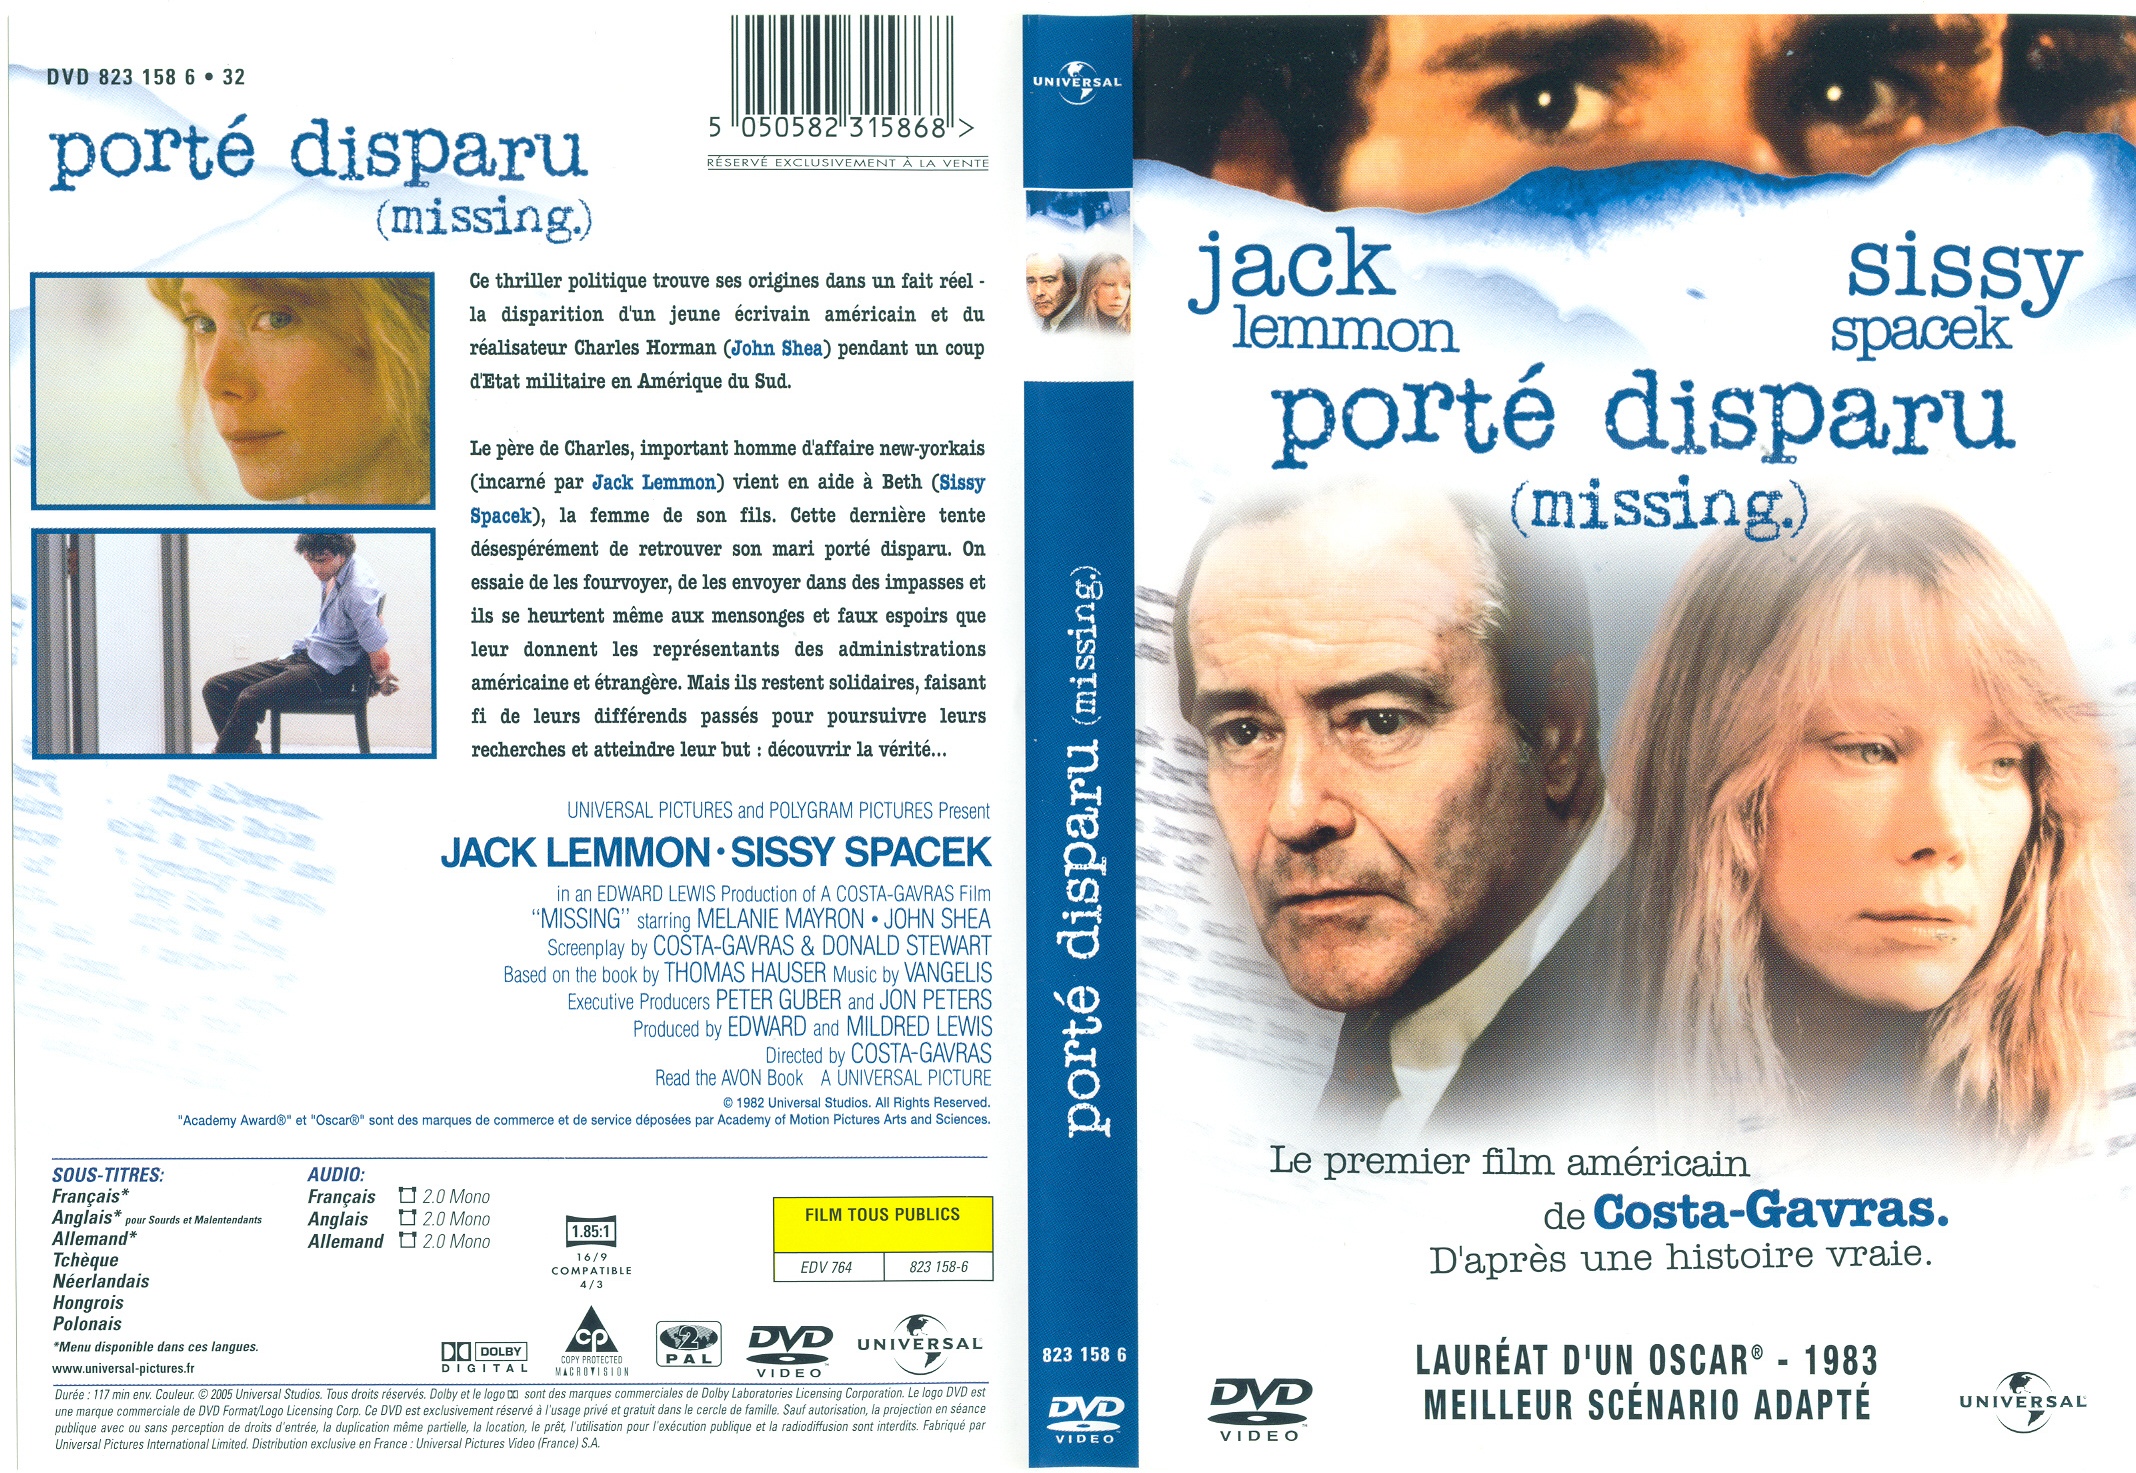 Jaquette DVD Missing ports disparus